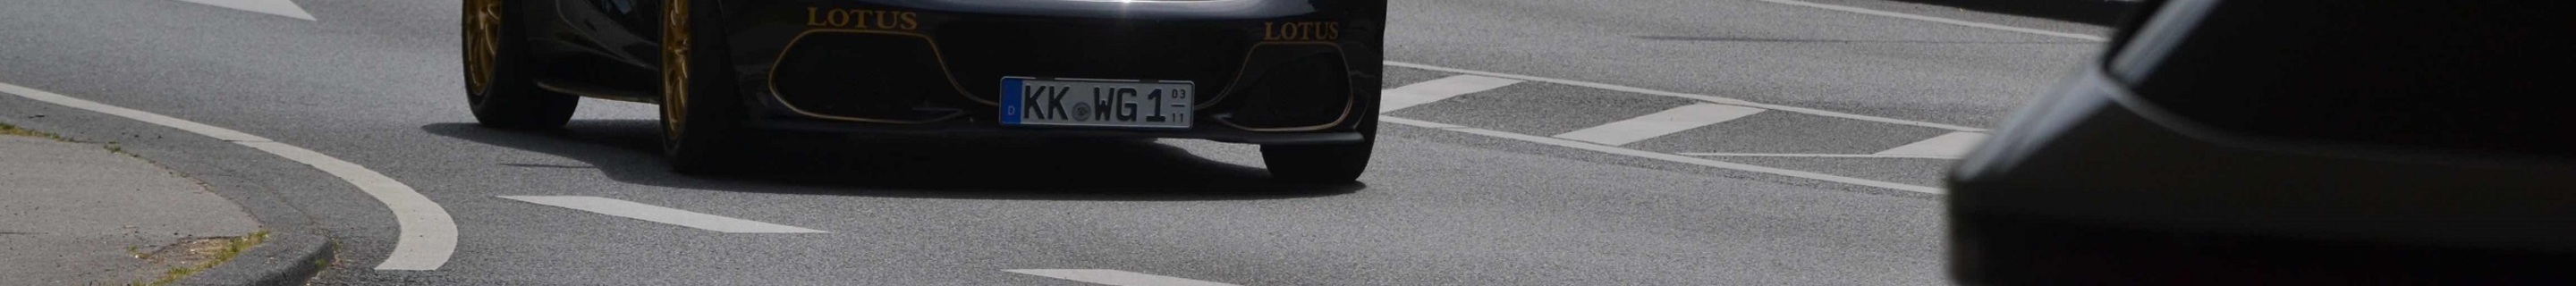 Lotus Elise S3 250 Cup 2017